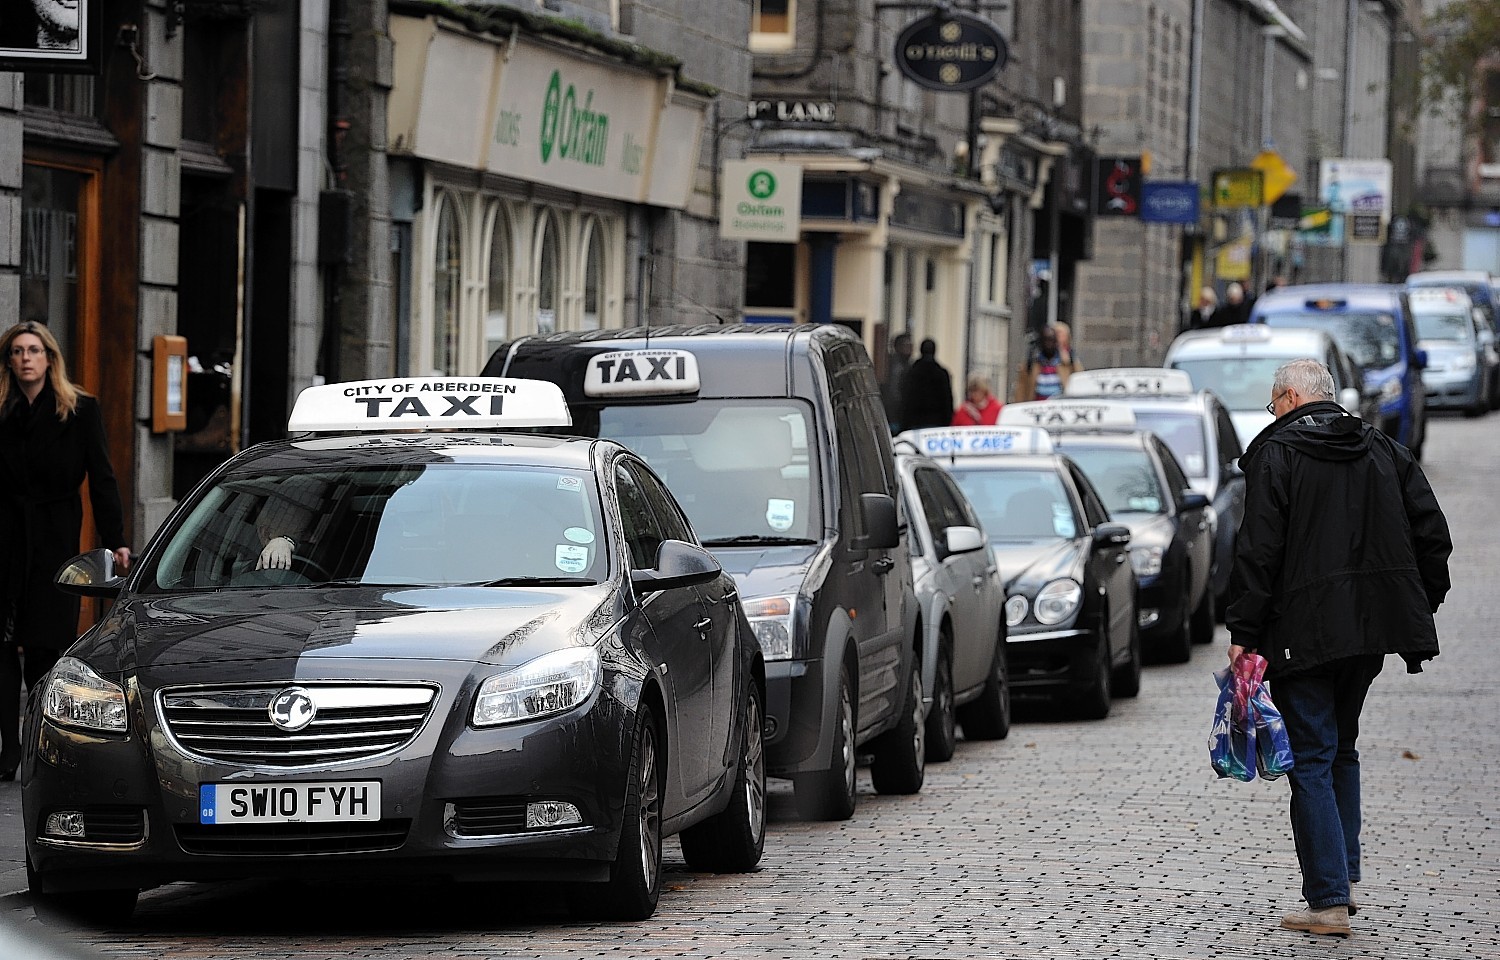 Aberdeen taxi rank